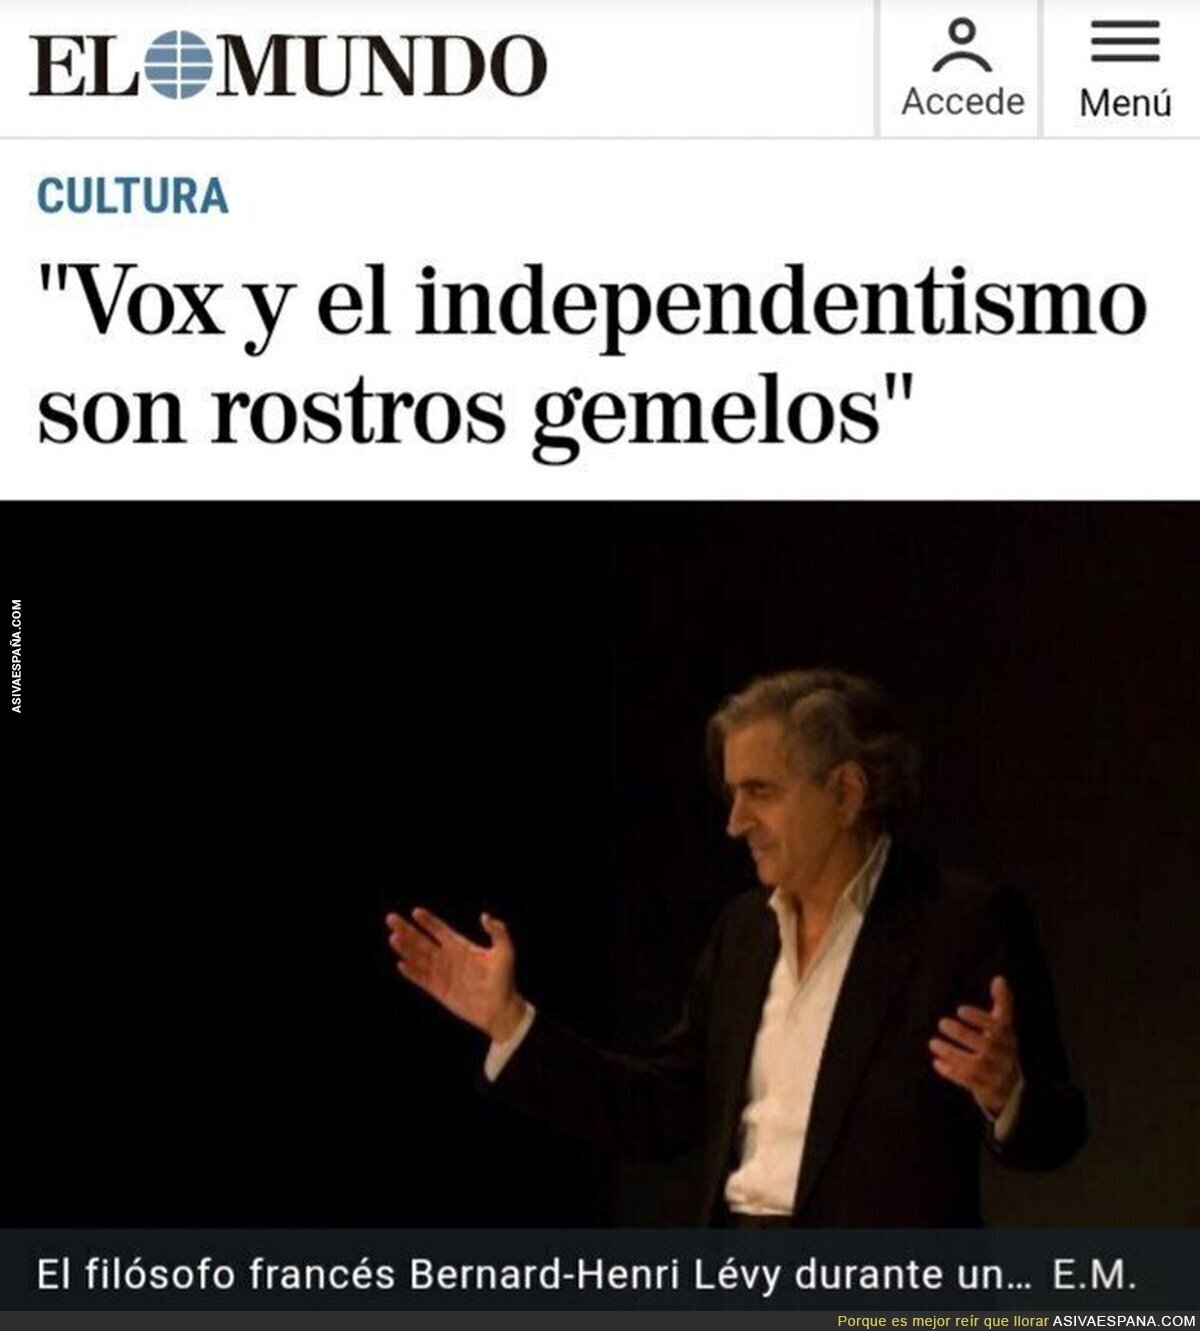 Un franchute siniestro compara a VOX con el independentismo